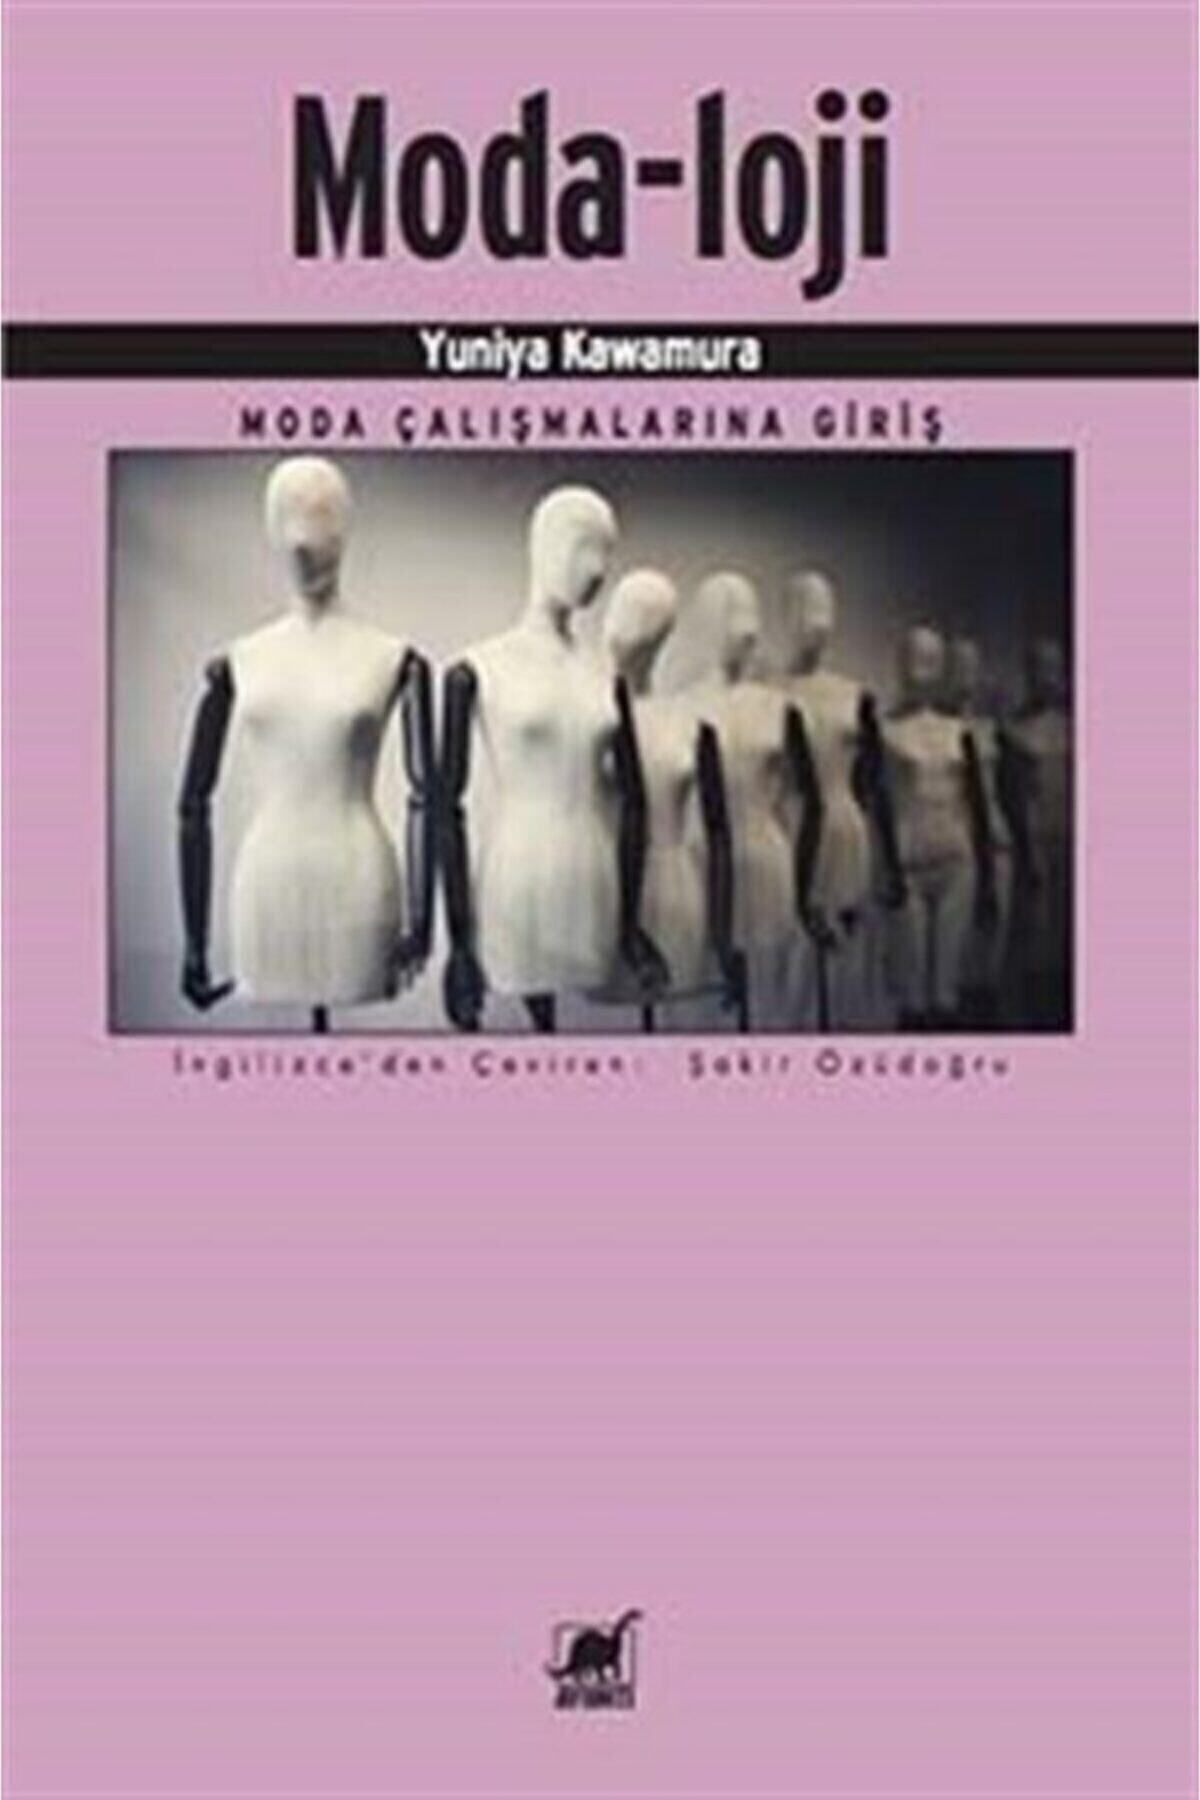 Ayrıntı Yayınları Moda-loji - Yuniya Kawamura